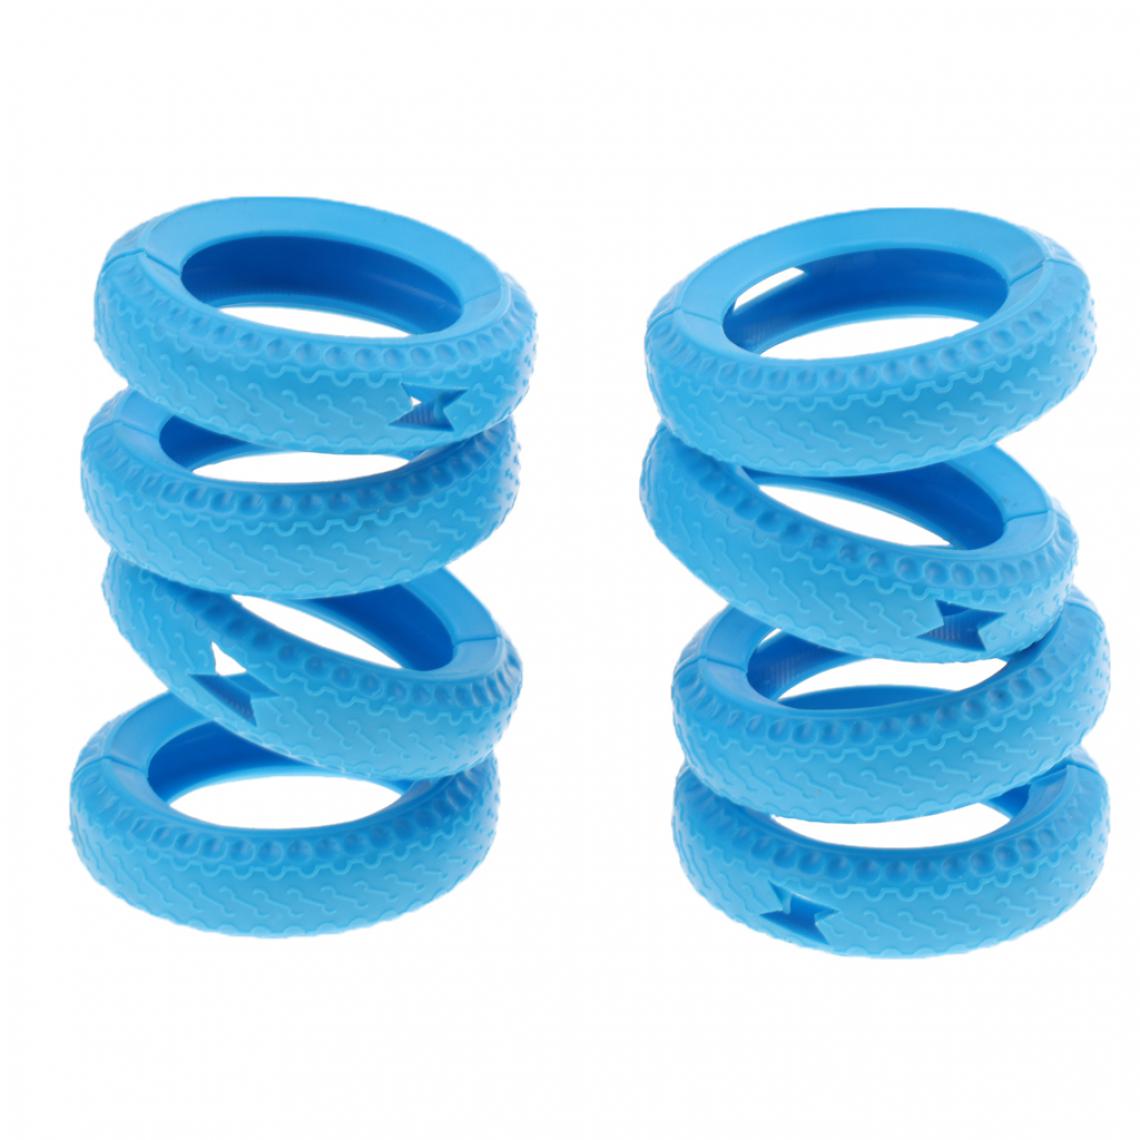 marque generique - 2pcs hamster jouet forage tube tunnel pneu cage accessoires décor bleu - Jouet pour chien